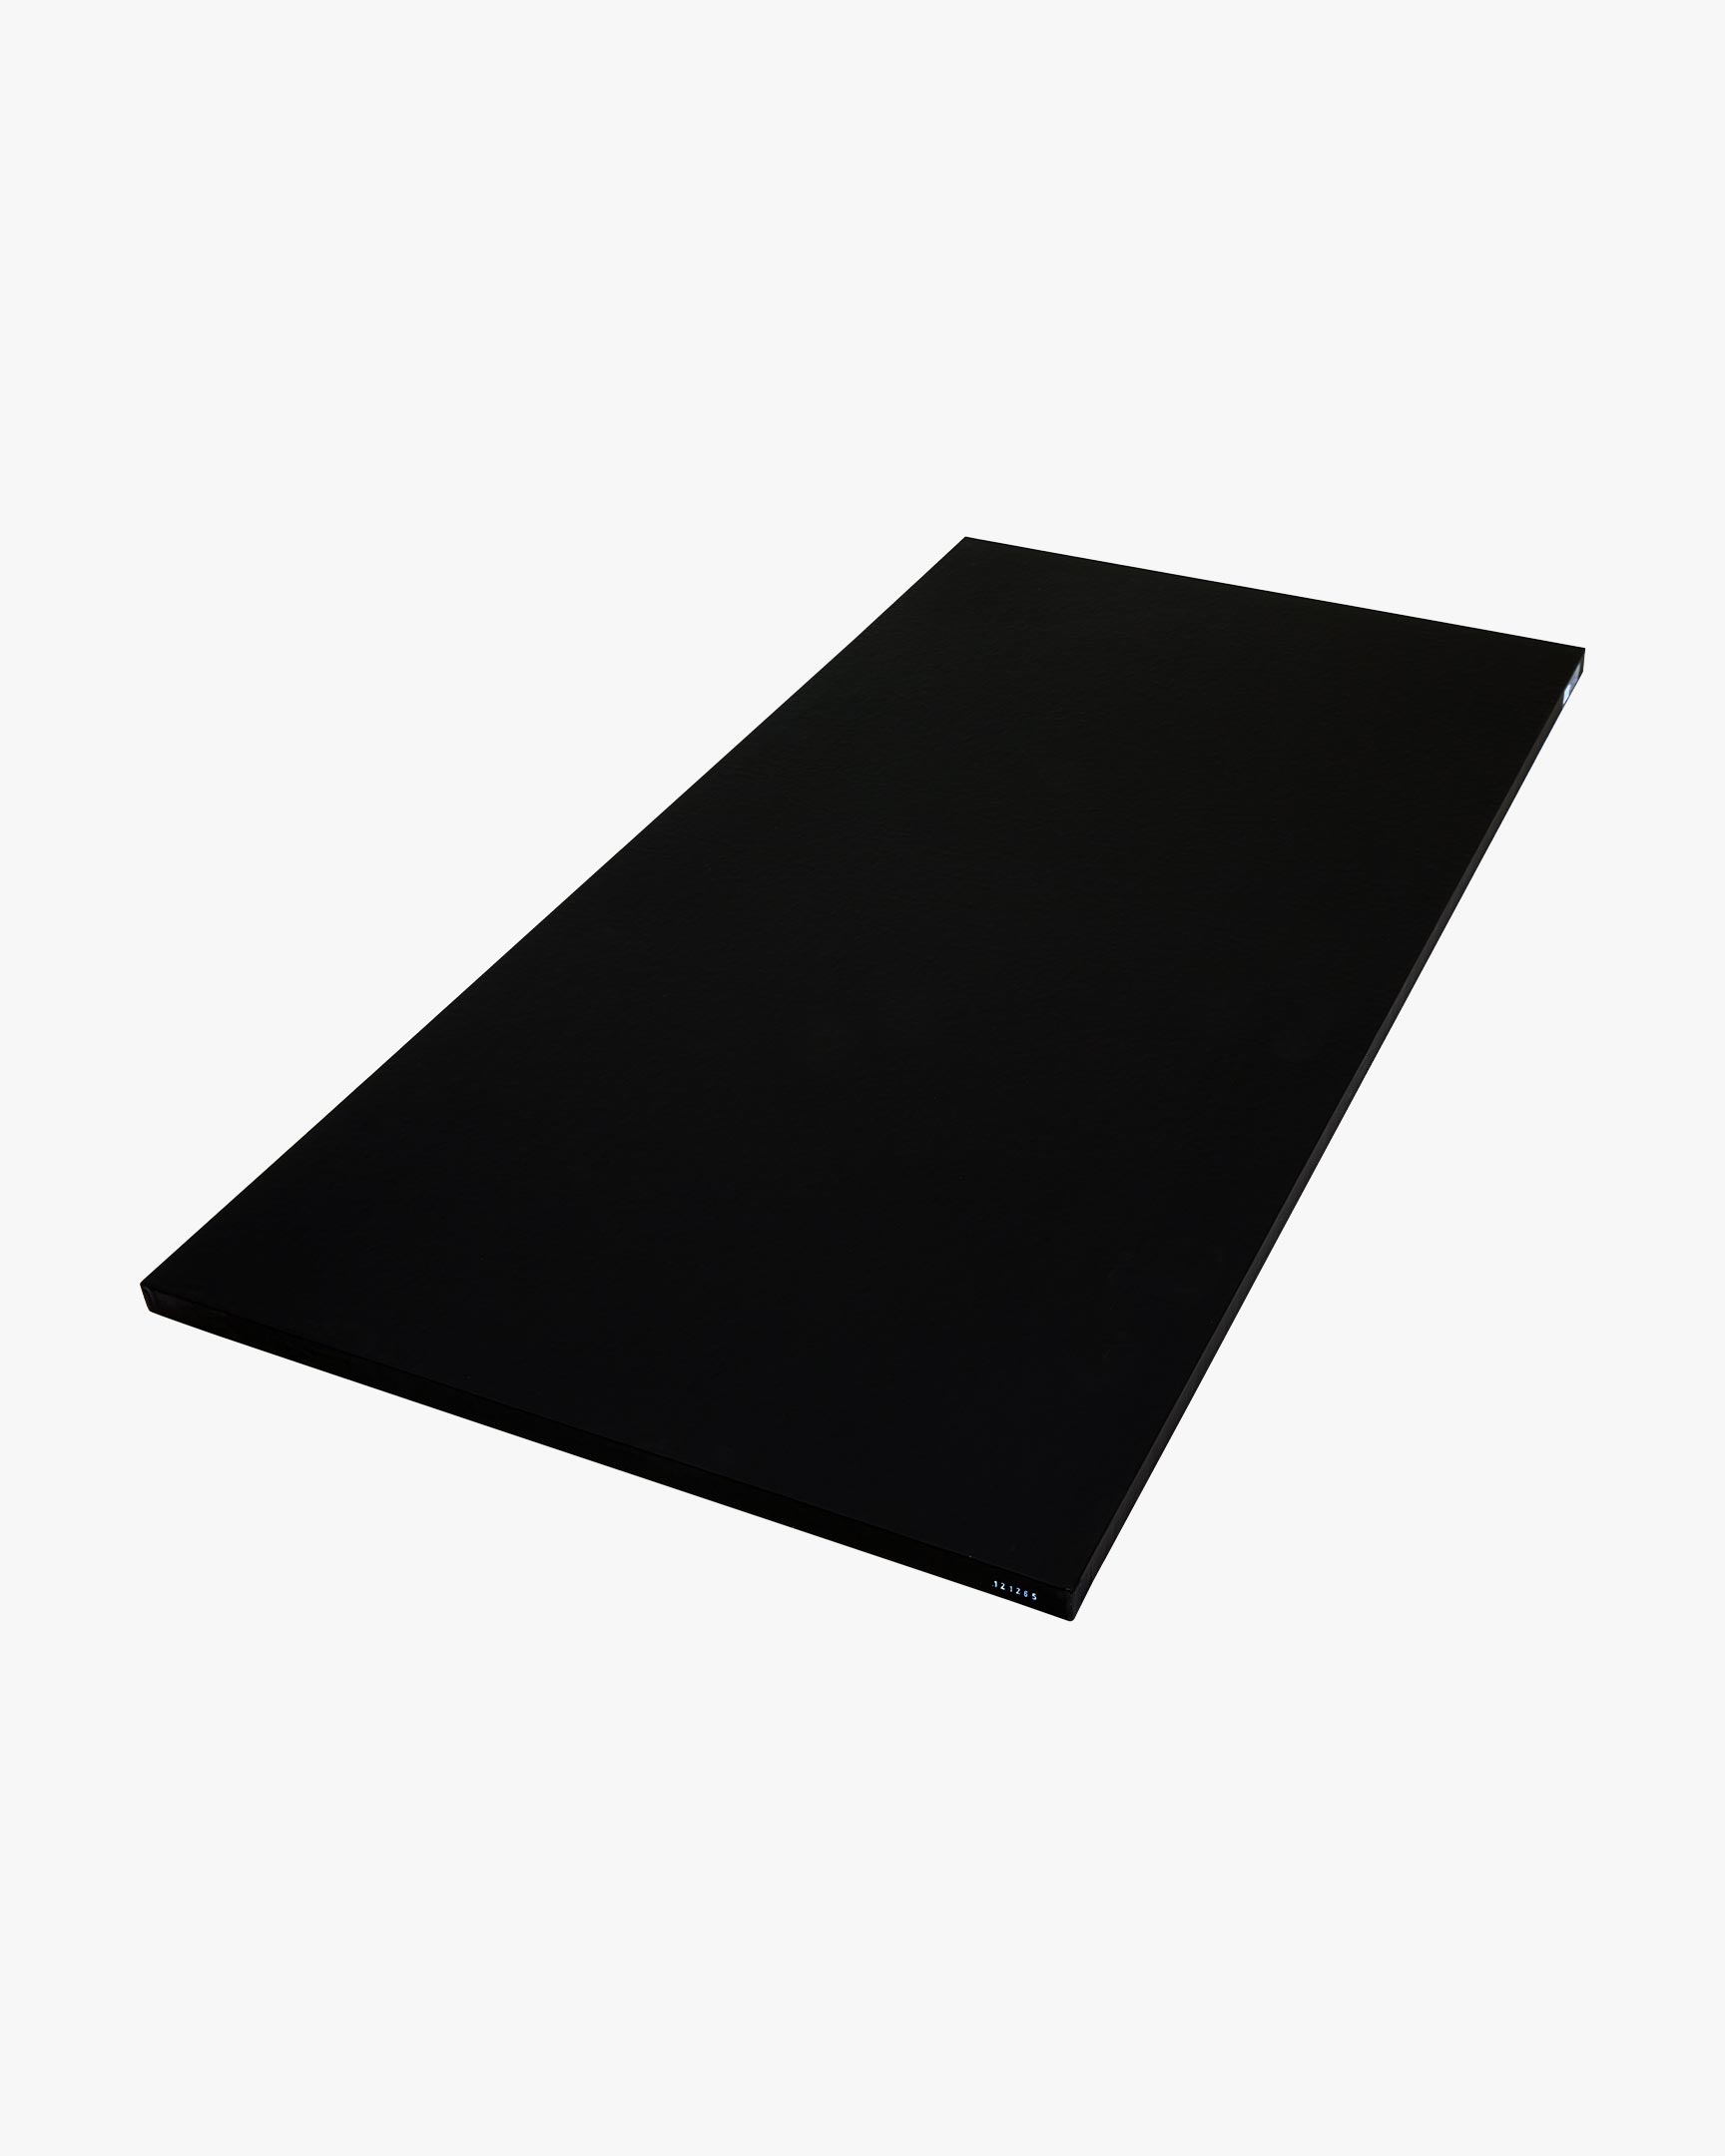 Smooth Tile Mat - 1m x 2m 1.5" Black